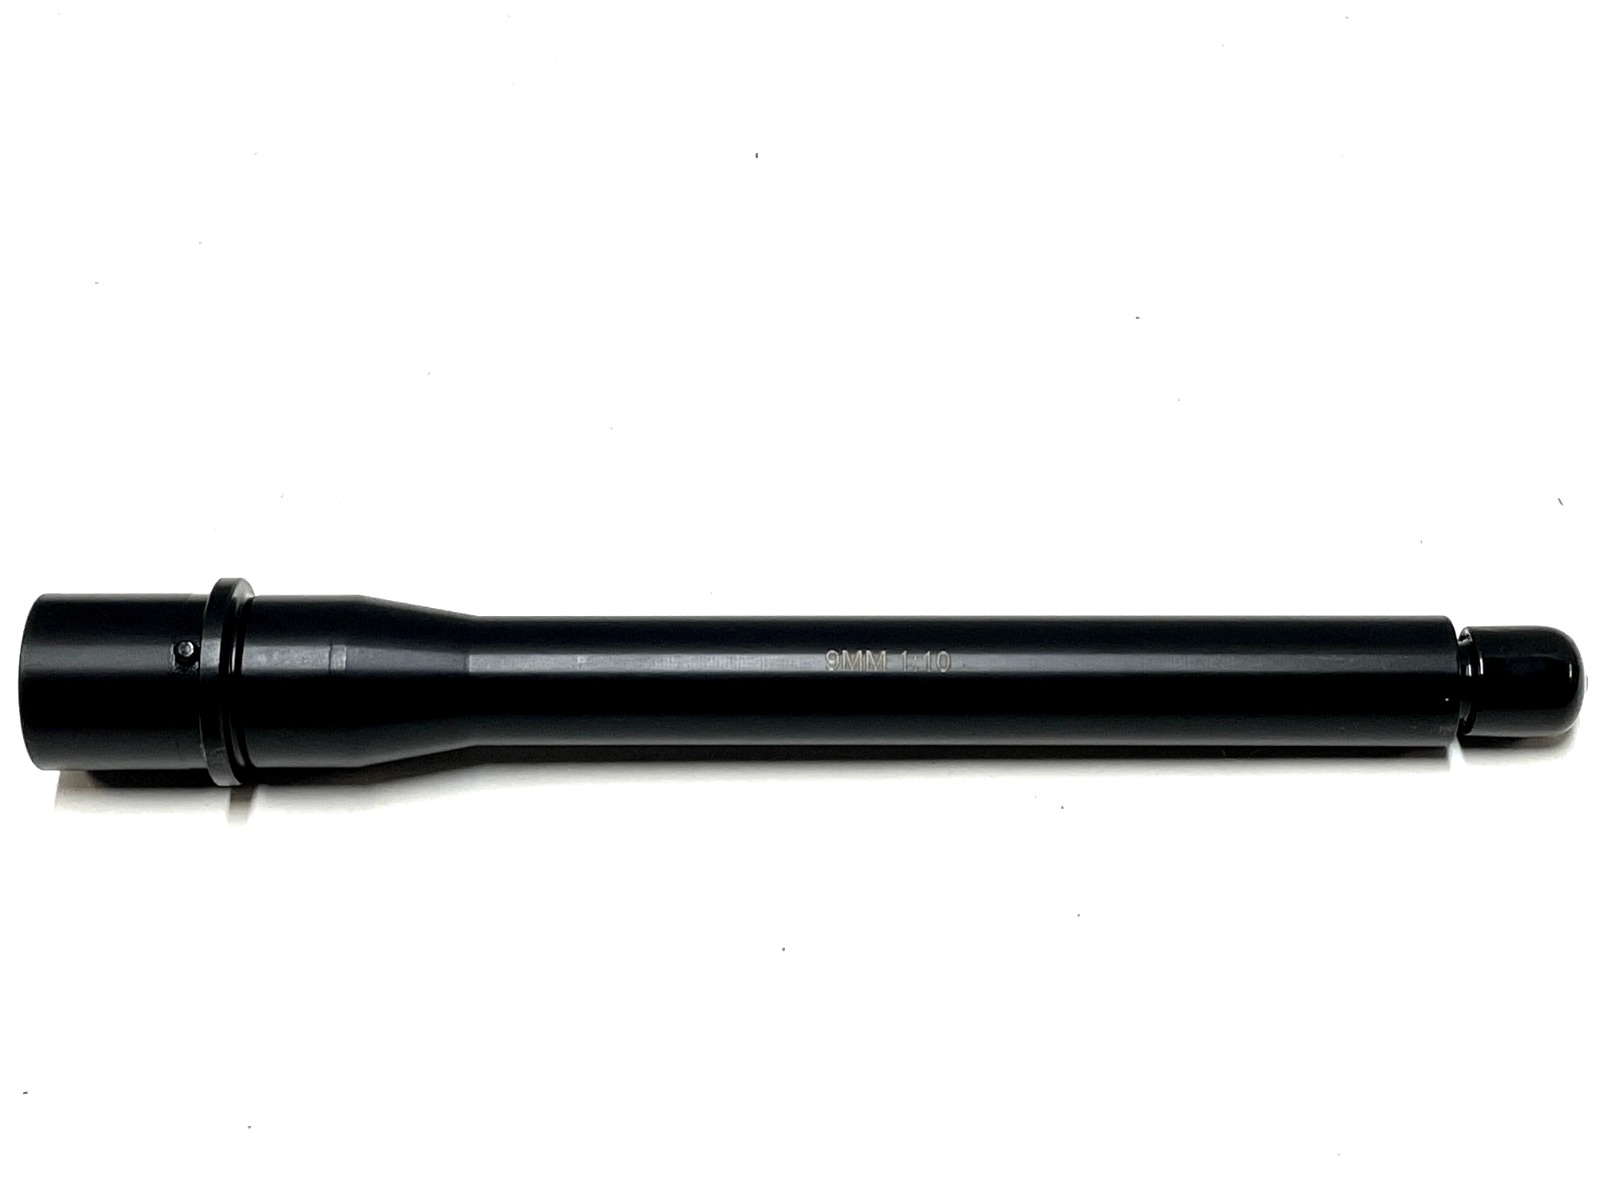 Tactical Kinetics 8.5 inch AR-15 9mm Pistol Caliber Melonite Barrel